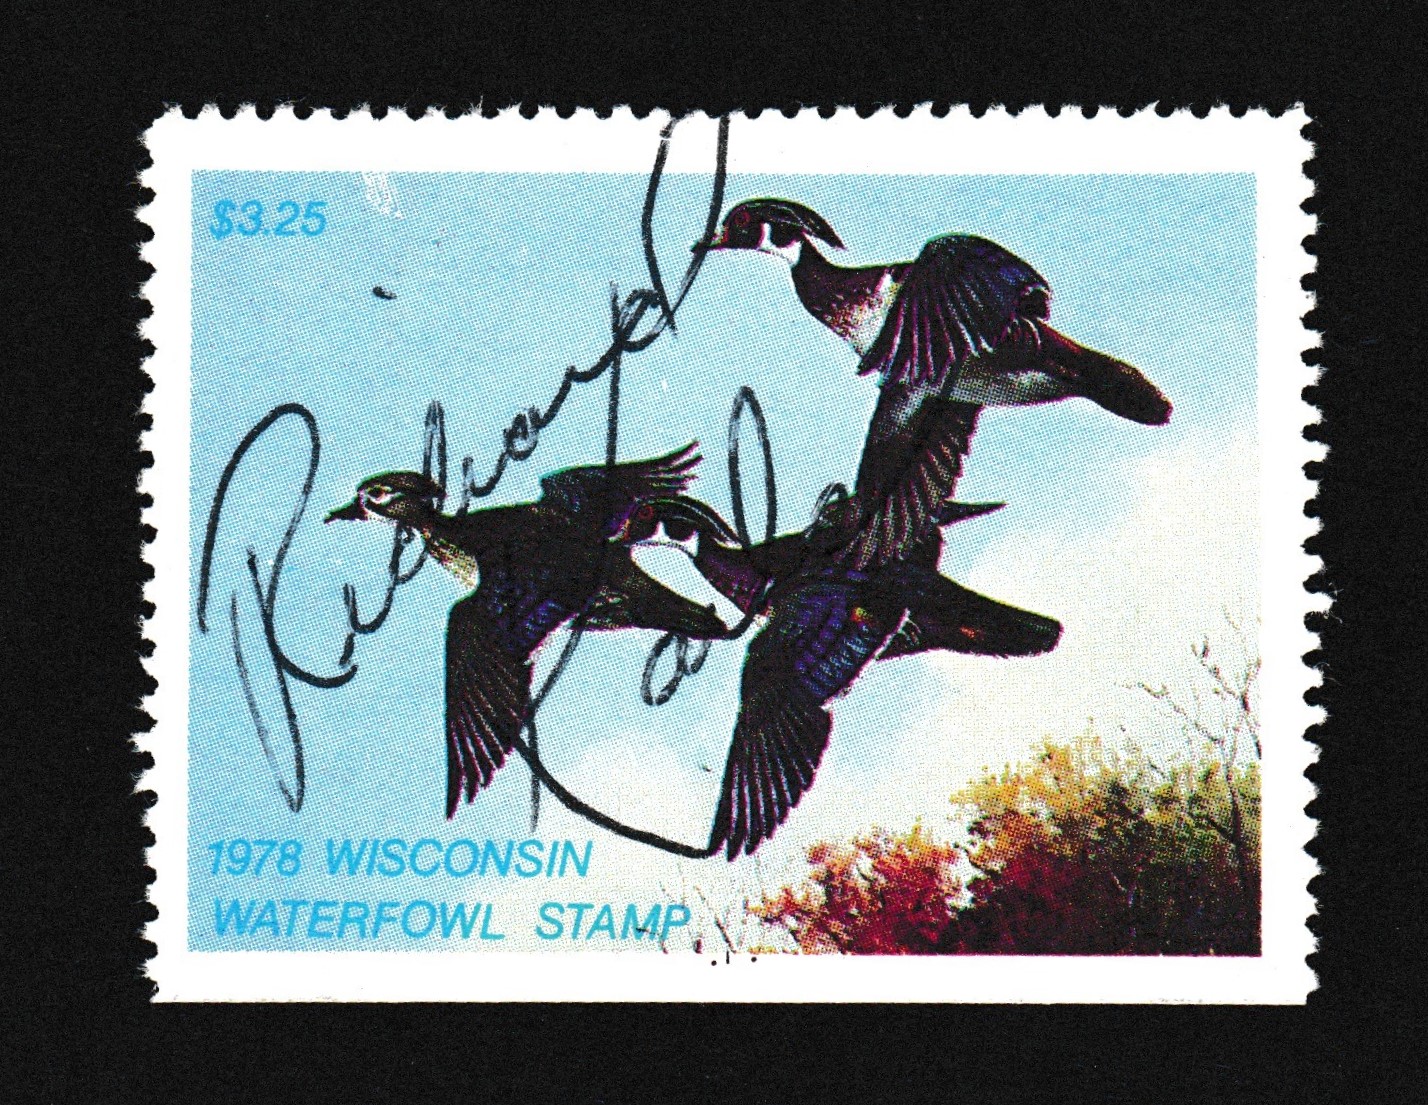 WI waterfowl W1 $3.25 U VF, 1978 P